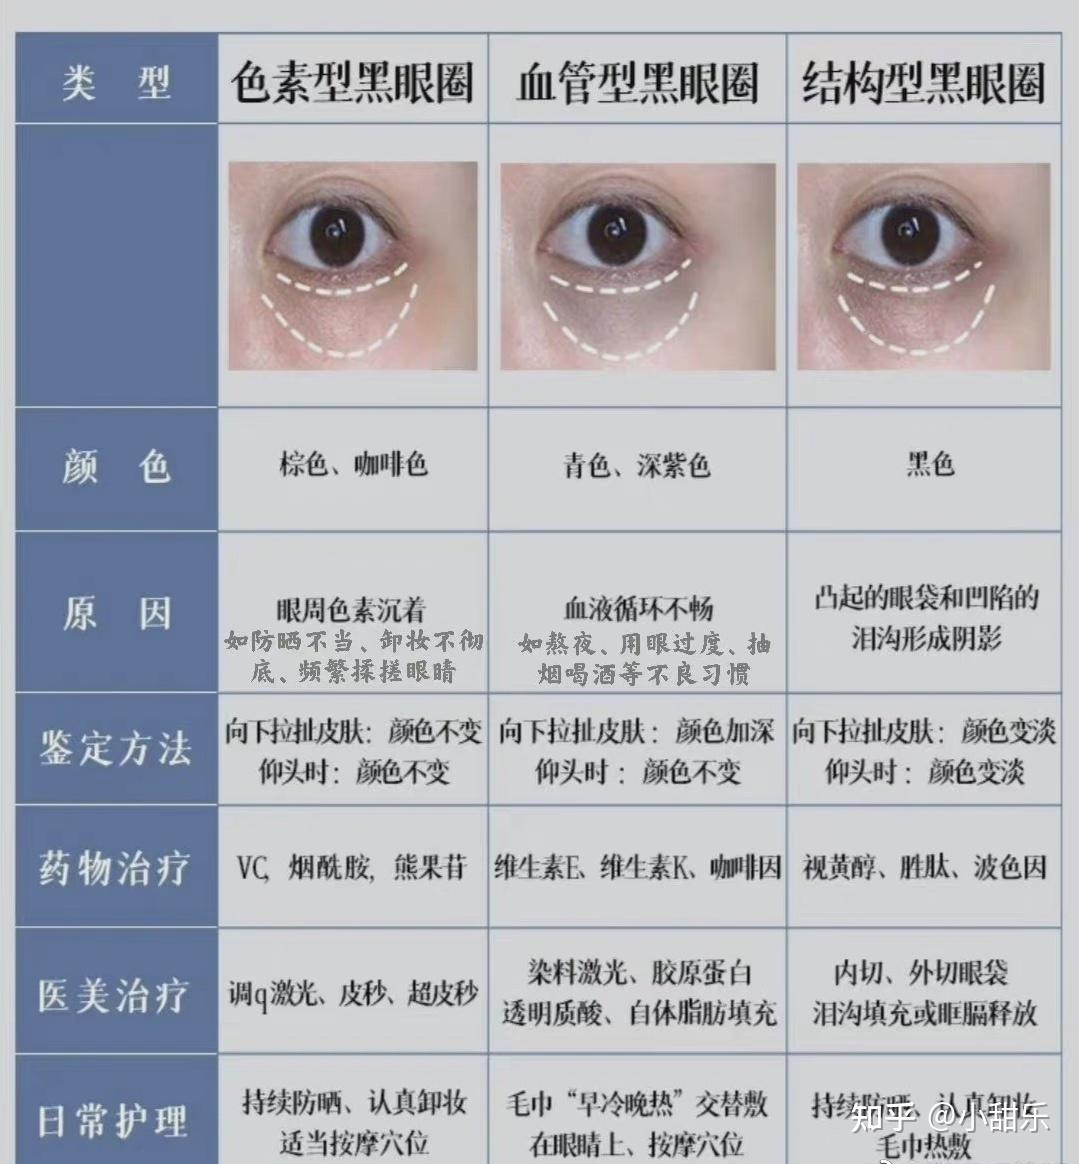 如何治疗黑眼圈? 